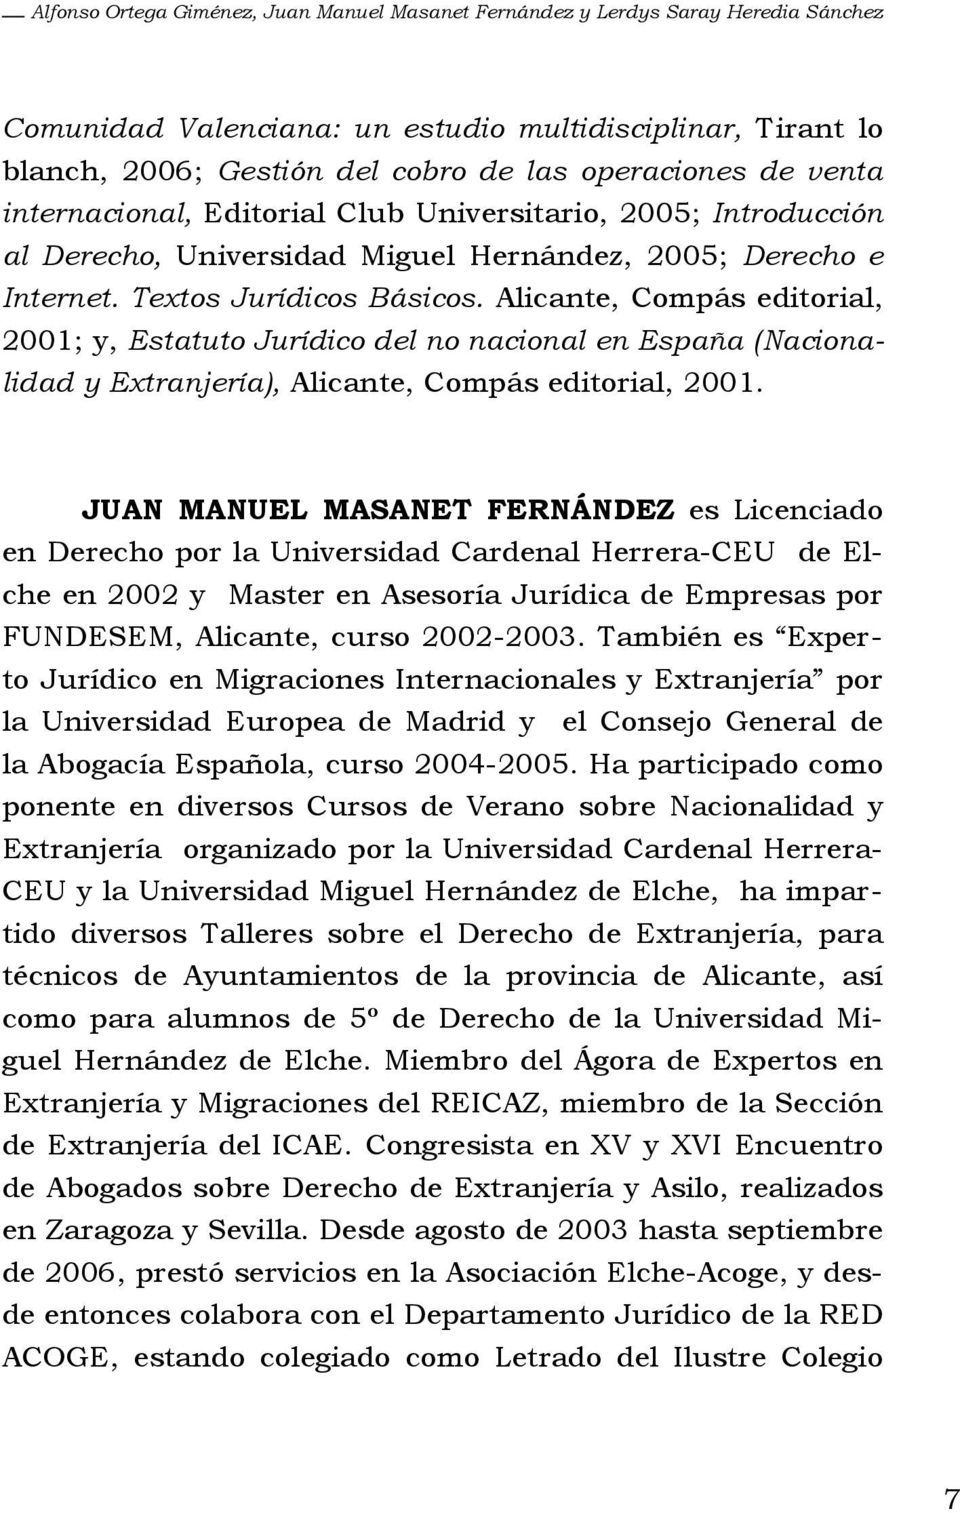 Alicante, Compás editorial, 2001; y, Estatuto Jurídico del no nacional en España (Nacionalidad y Extranjería), Alicante, Compás editorial, 2001.